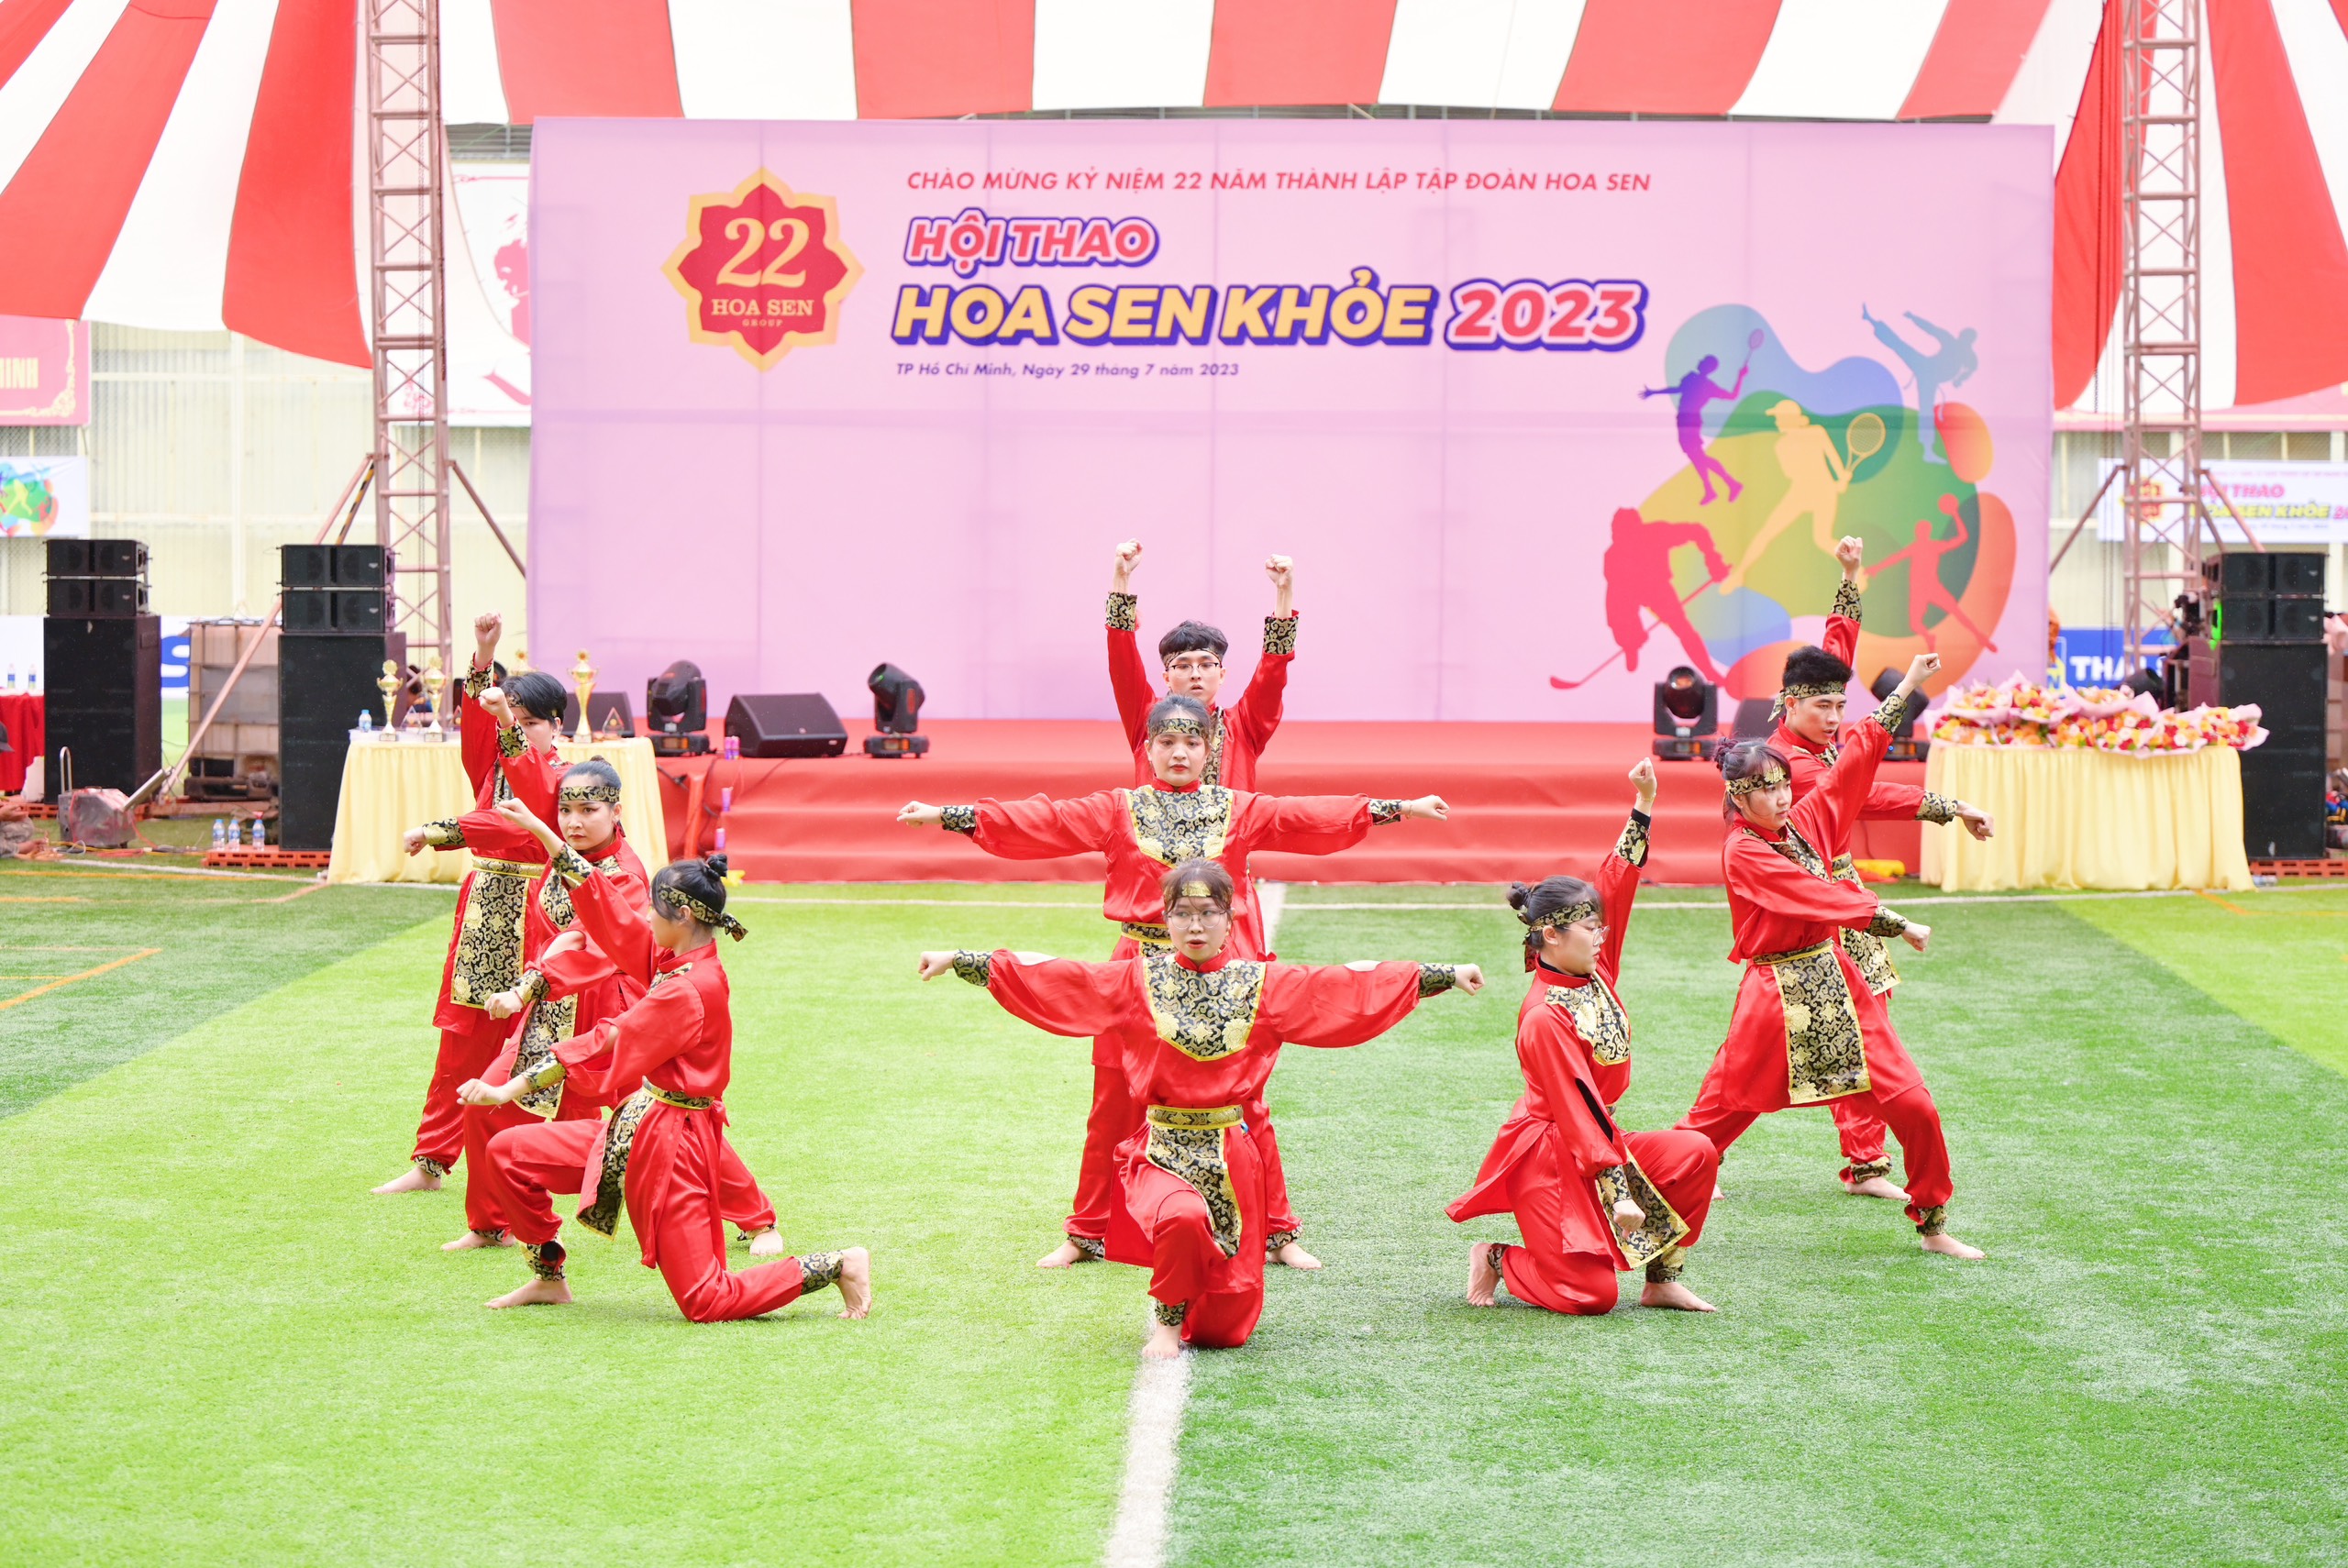 3. Cận cảnh các tiết mục thi đấu hạng mục Nhảy Flashmob tại Hội thao “Hoa Sen Khoẻ 2023” 2